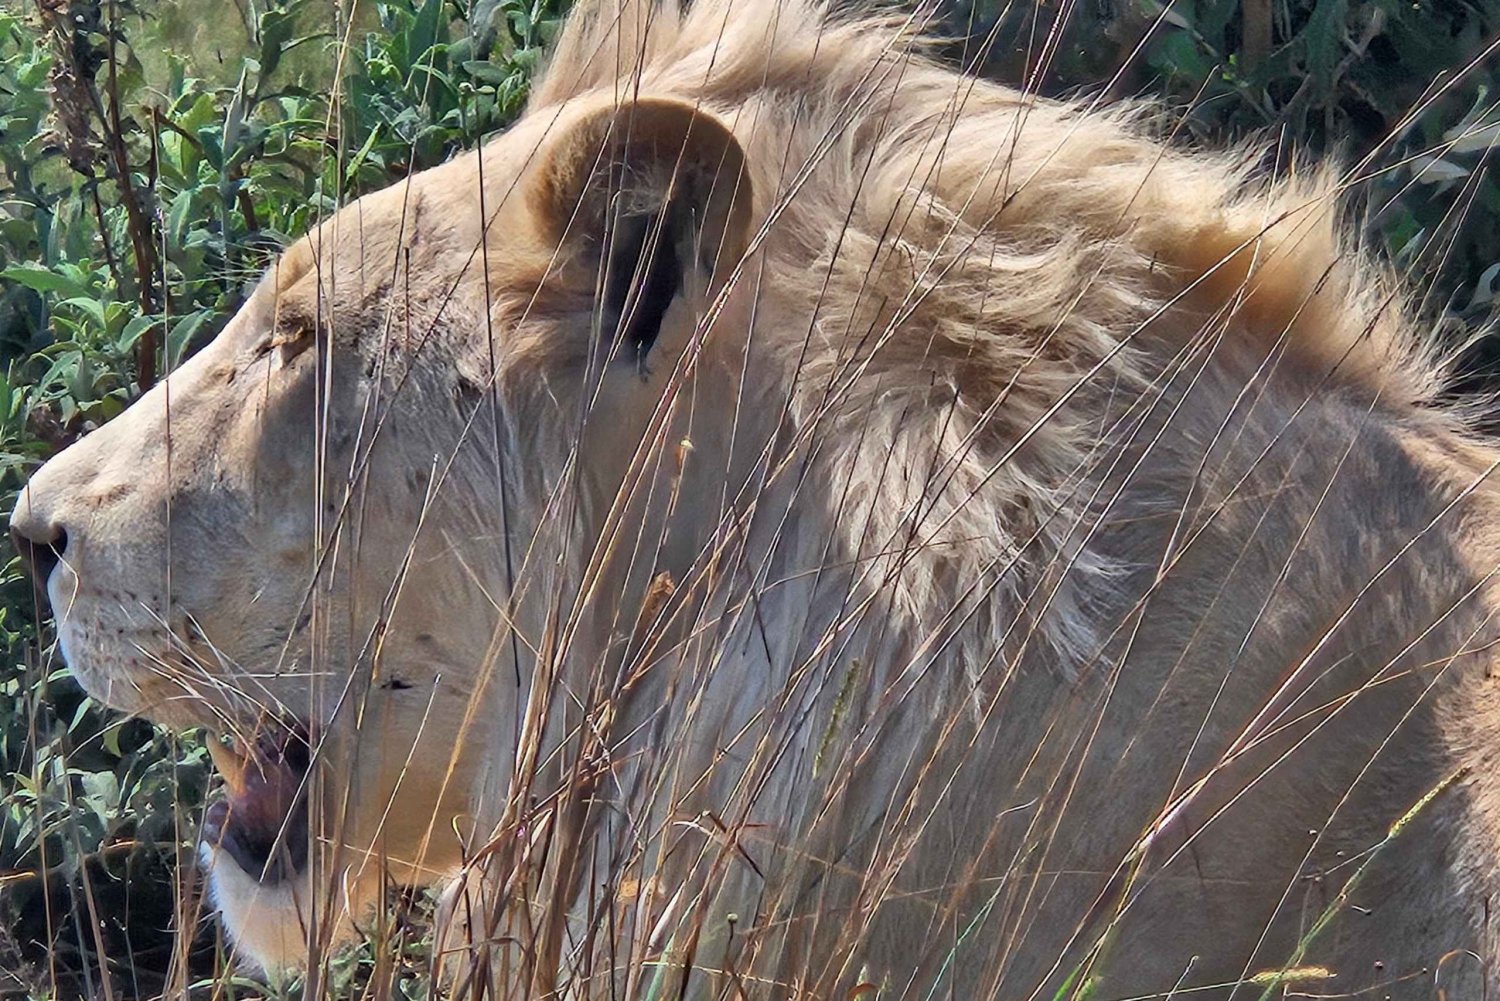 Safari al Parco dei leoni e dei rinoceronti / Villaggio culturale di Lesedi